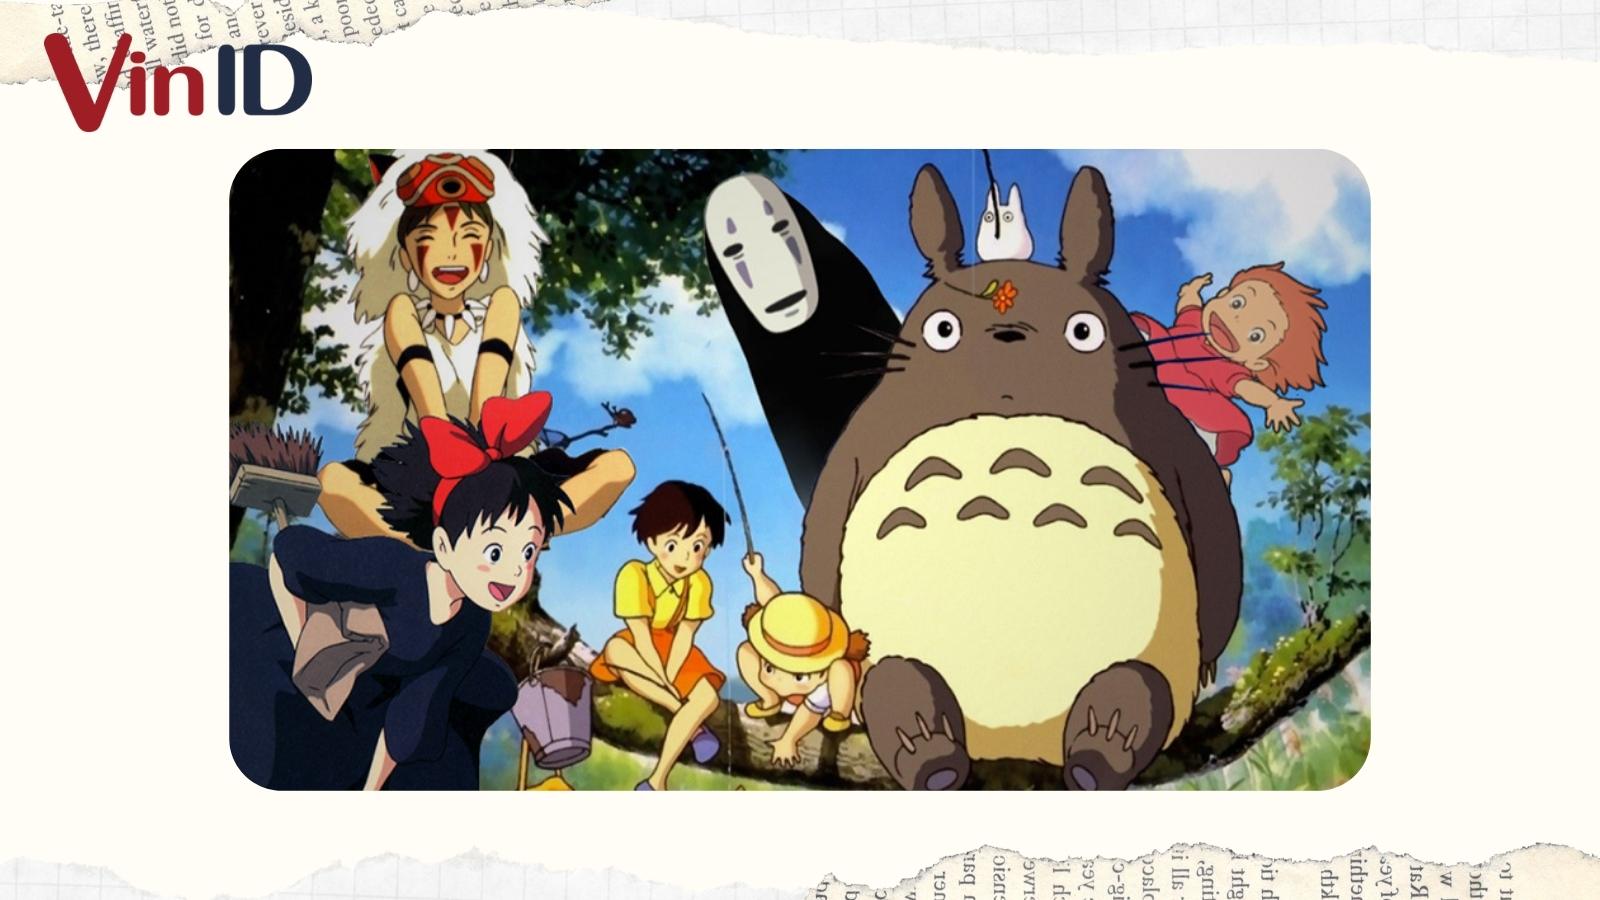 Bạn đam mê những bộ phim hoạt hình được sản xuất bởi Ghibli? Những hình ảnh đẹp mắt và câu chuyện sâu sắc của bộ phim sẽ khiến bạn trở thành fan của Ghibli.